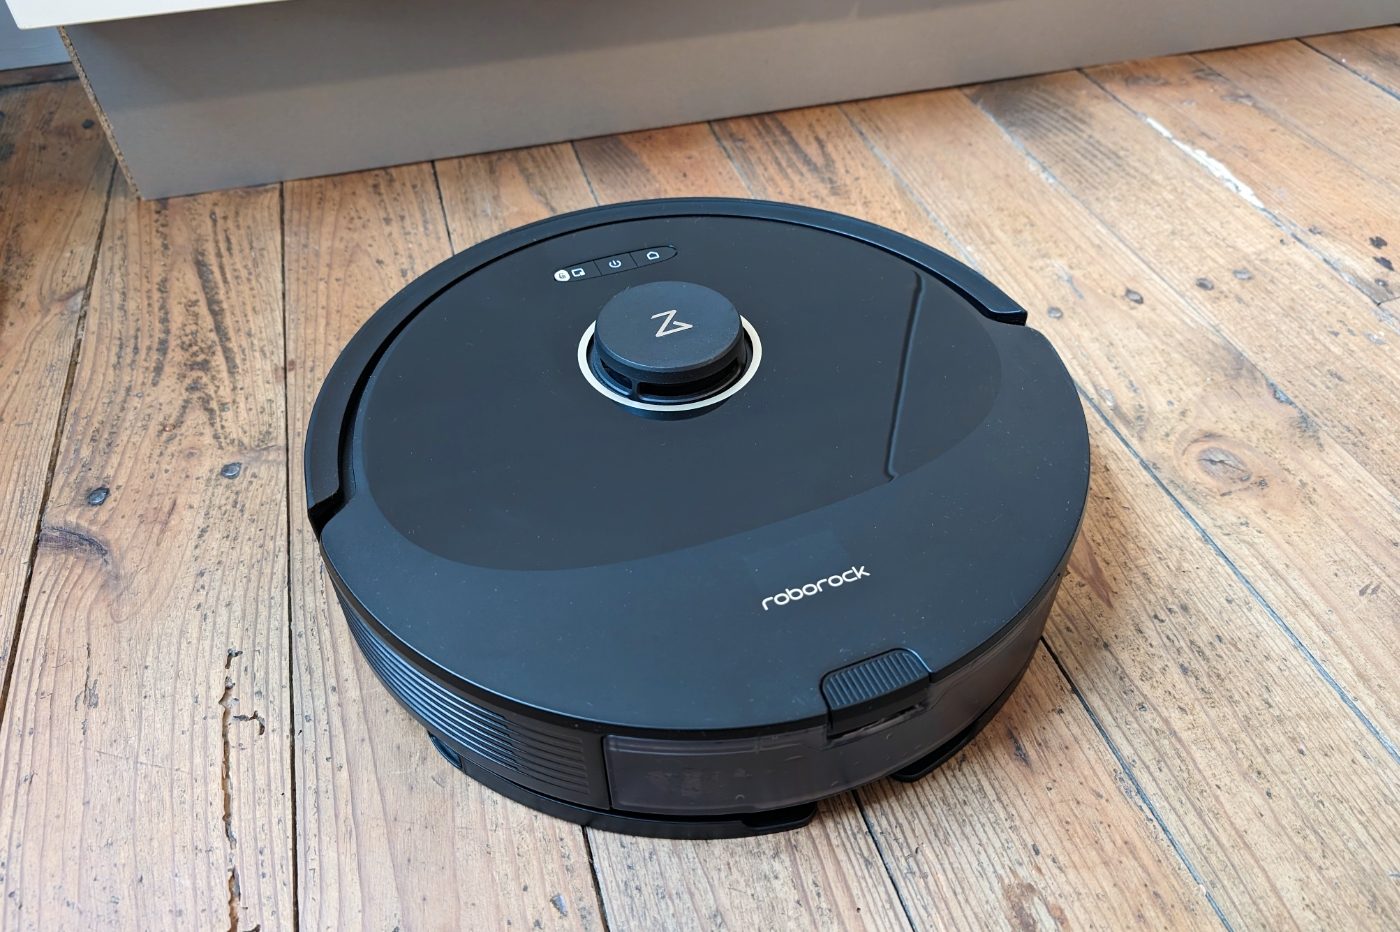 Aspirateur robot Roomba : comment ça marche, est-ce que ça vaut le coup ?